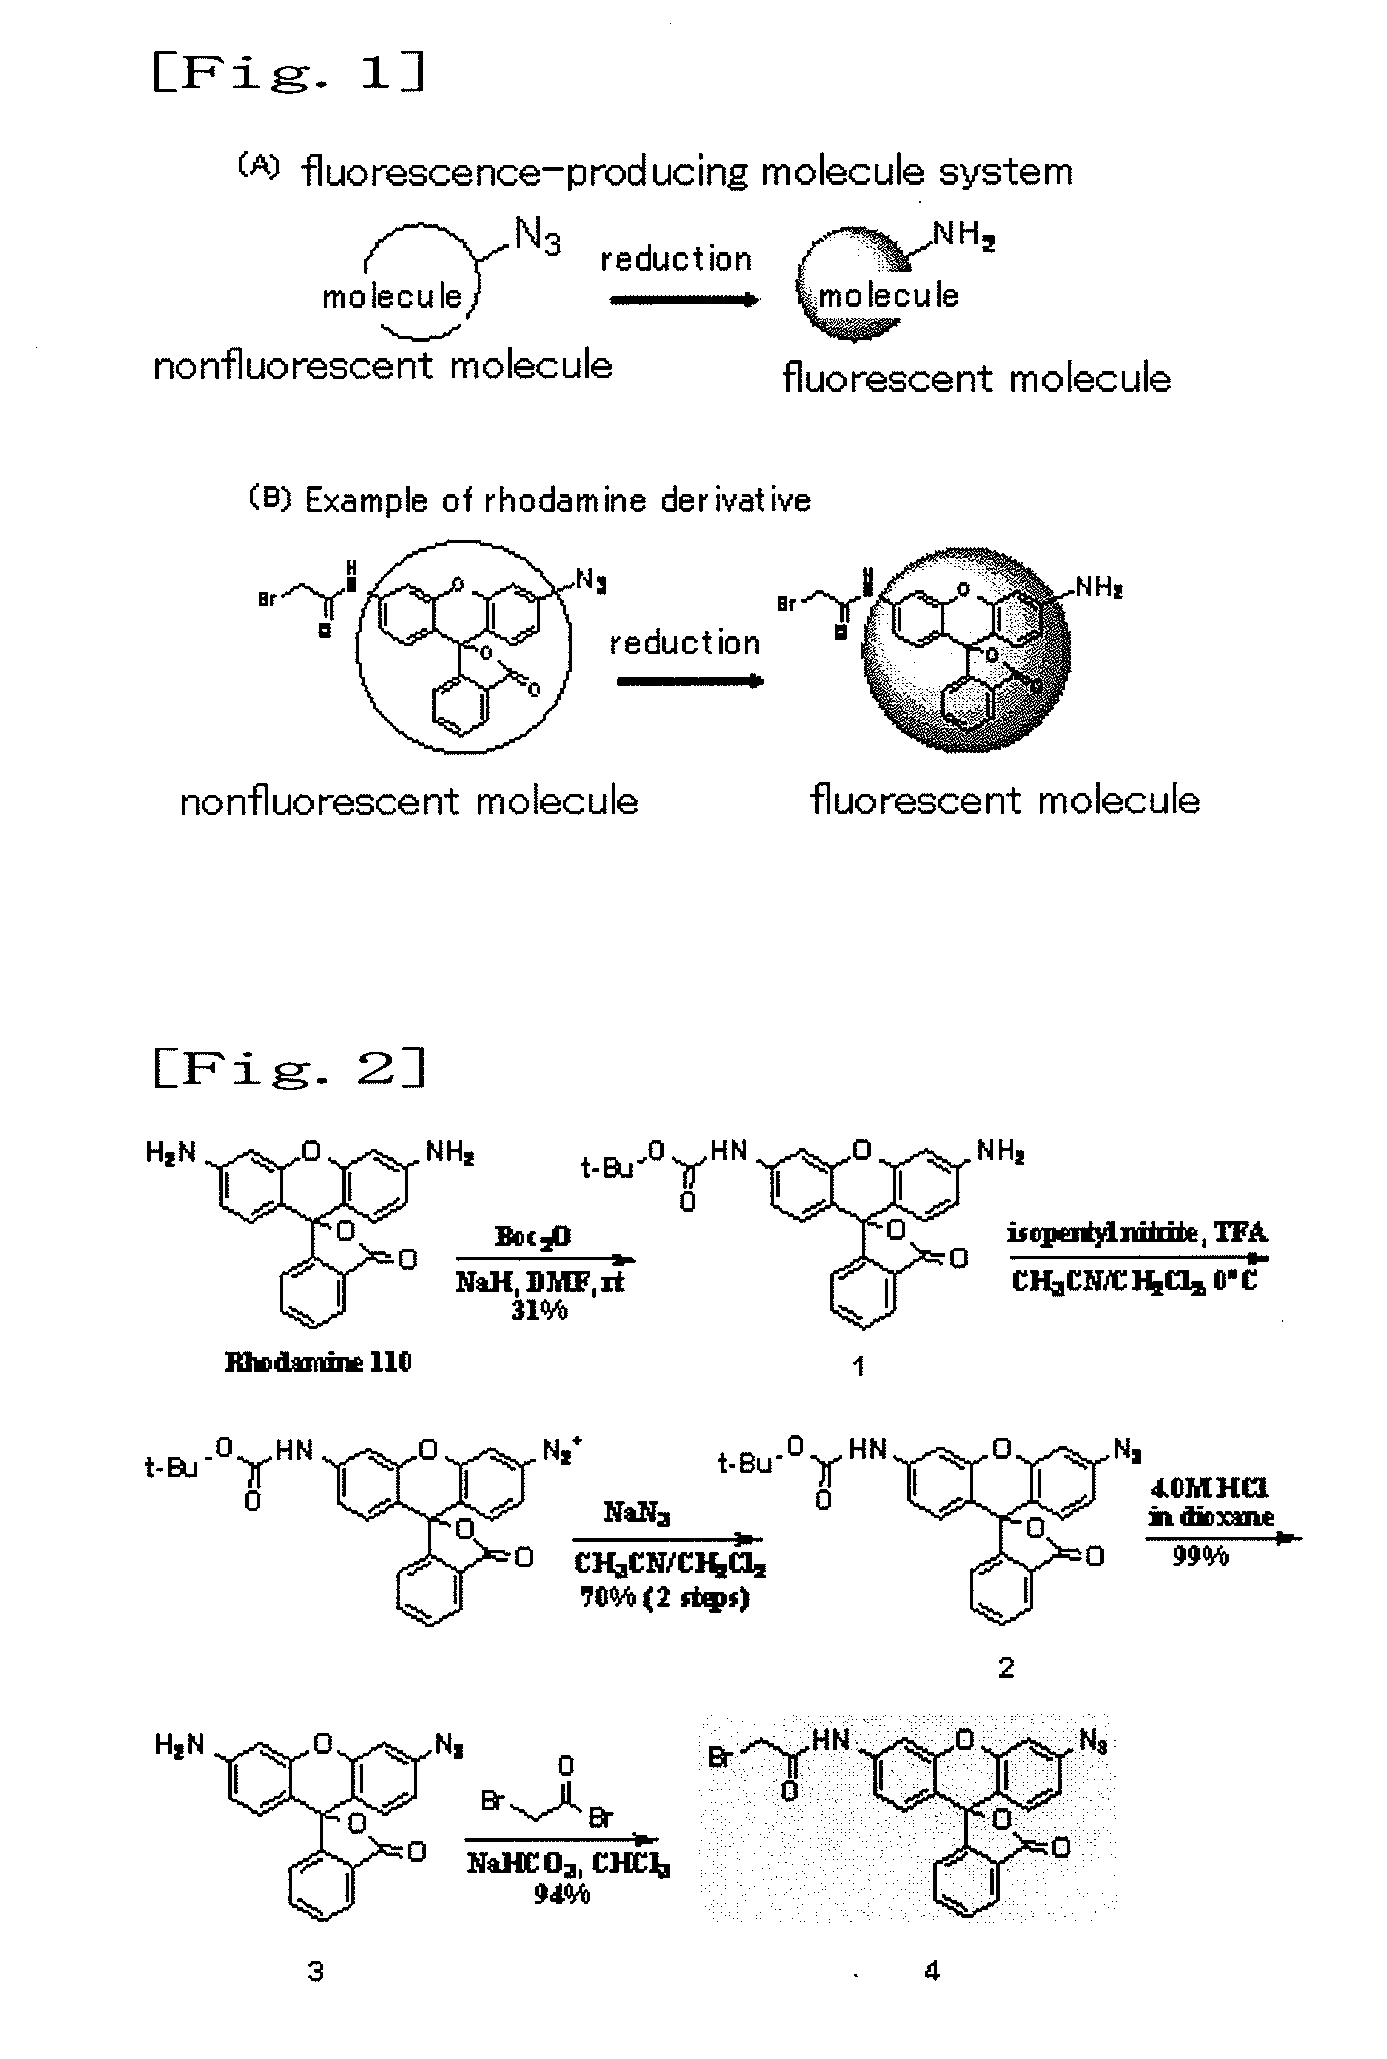 Fluorescence-producing molecule